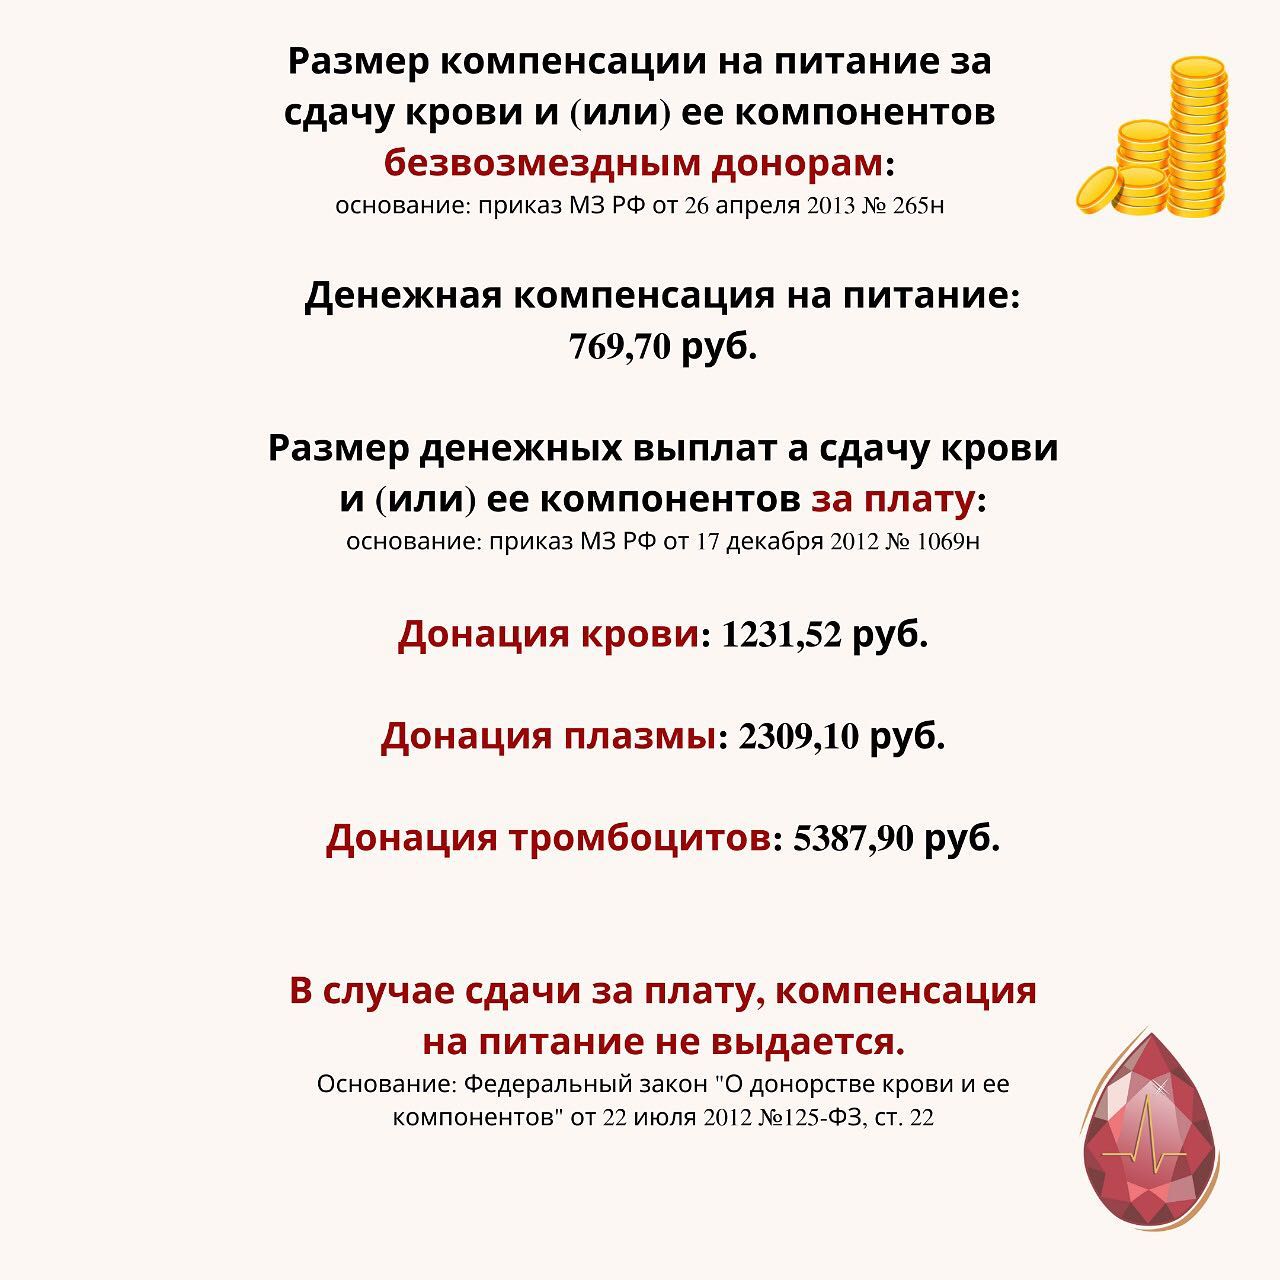 Размеры выплат донорам. Выплаты донорам. Выплаты донорам крови. Какие выплаты донорам крови?. Размер денежной компенсации донорам.